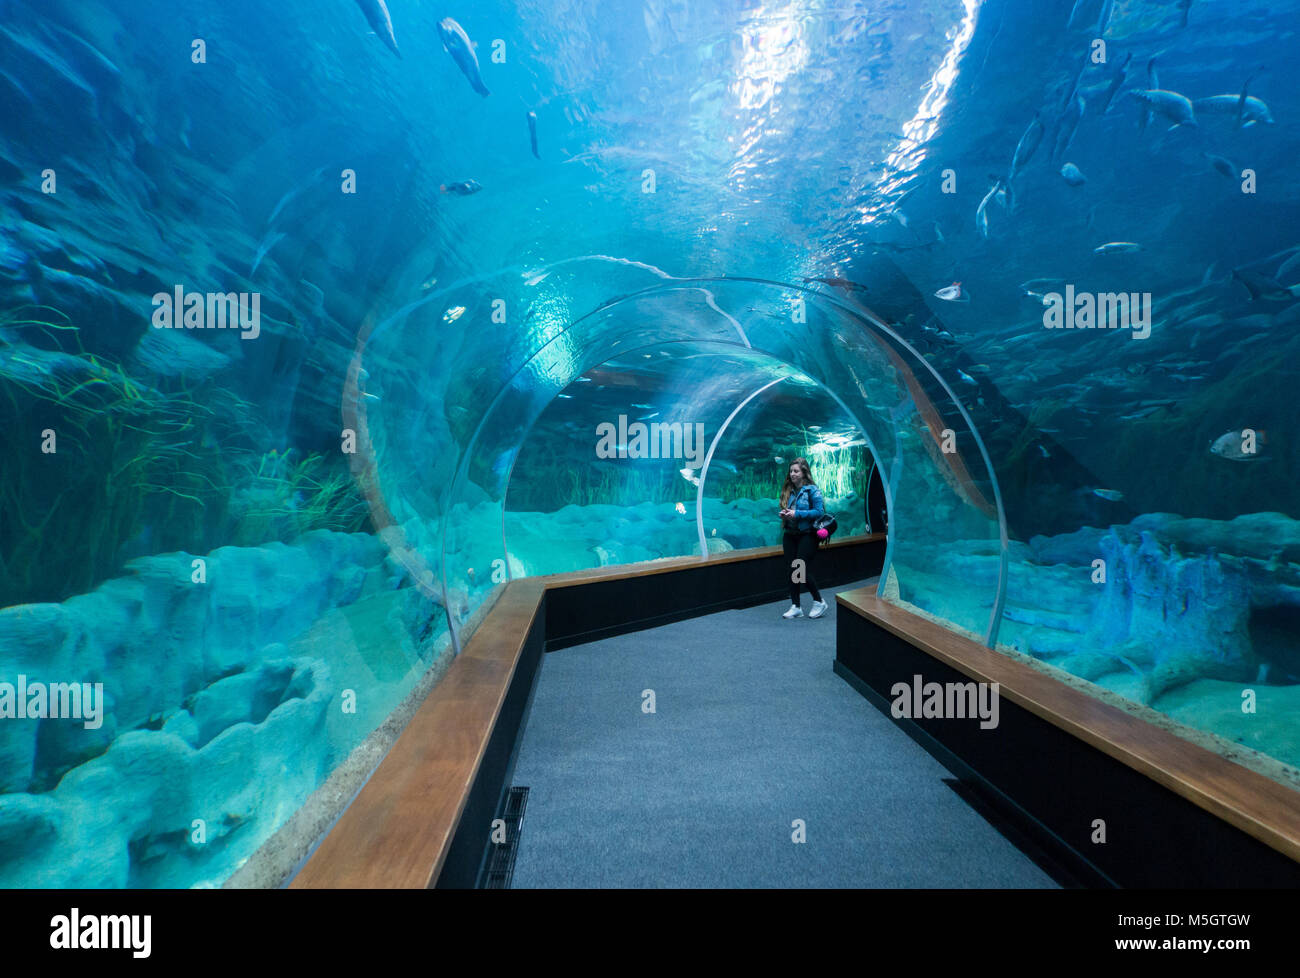 Poema del Mar, new aquarium in Las Palmas, Gran Canaria, Canary Islands,  Spain Stock Photo - Alamy